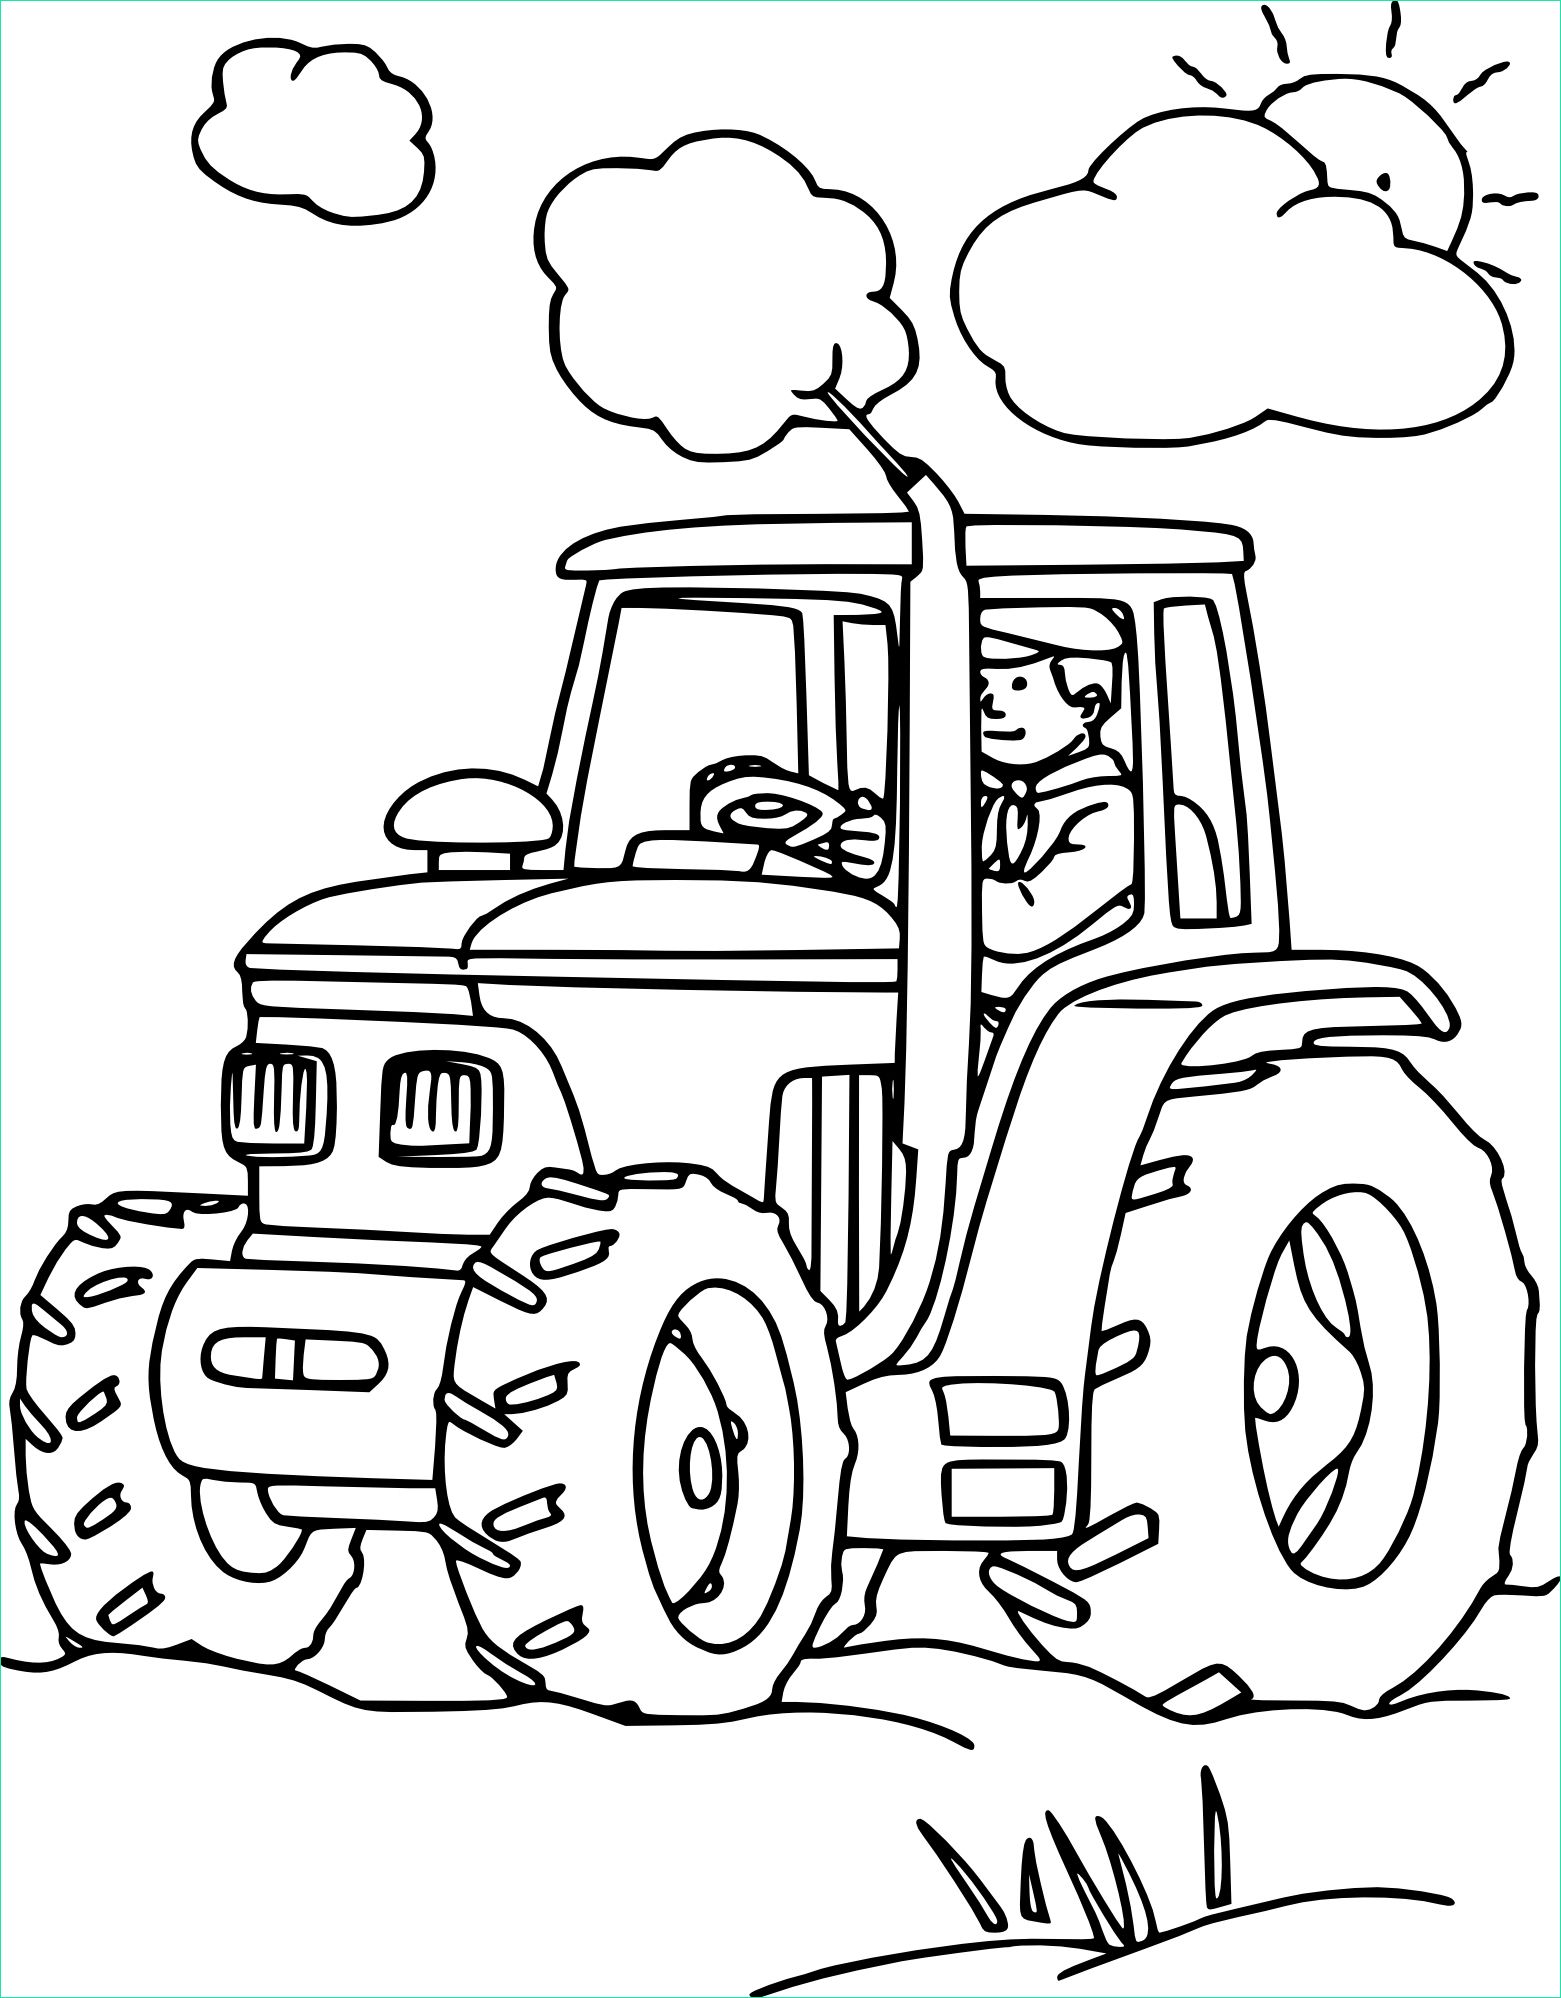 dessin tracteur agricole dessin colorier dun tracteur dedans coloriage tracteur tom a imprimer